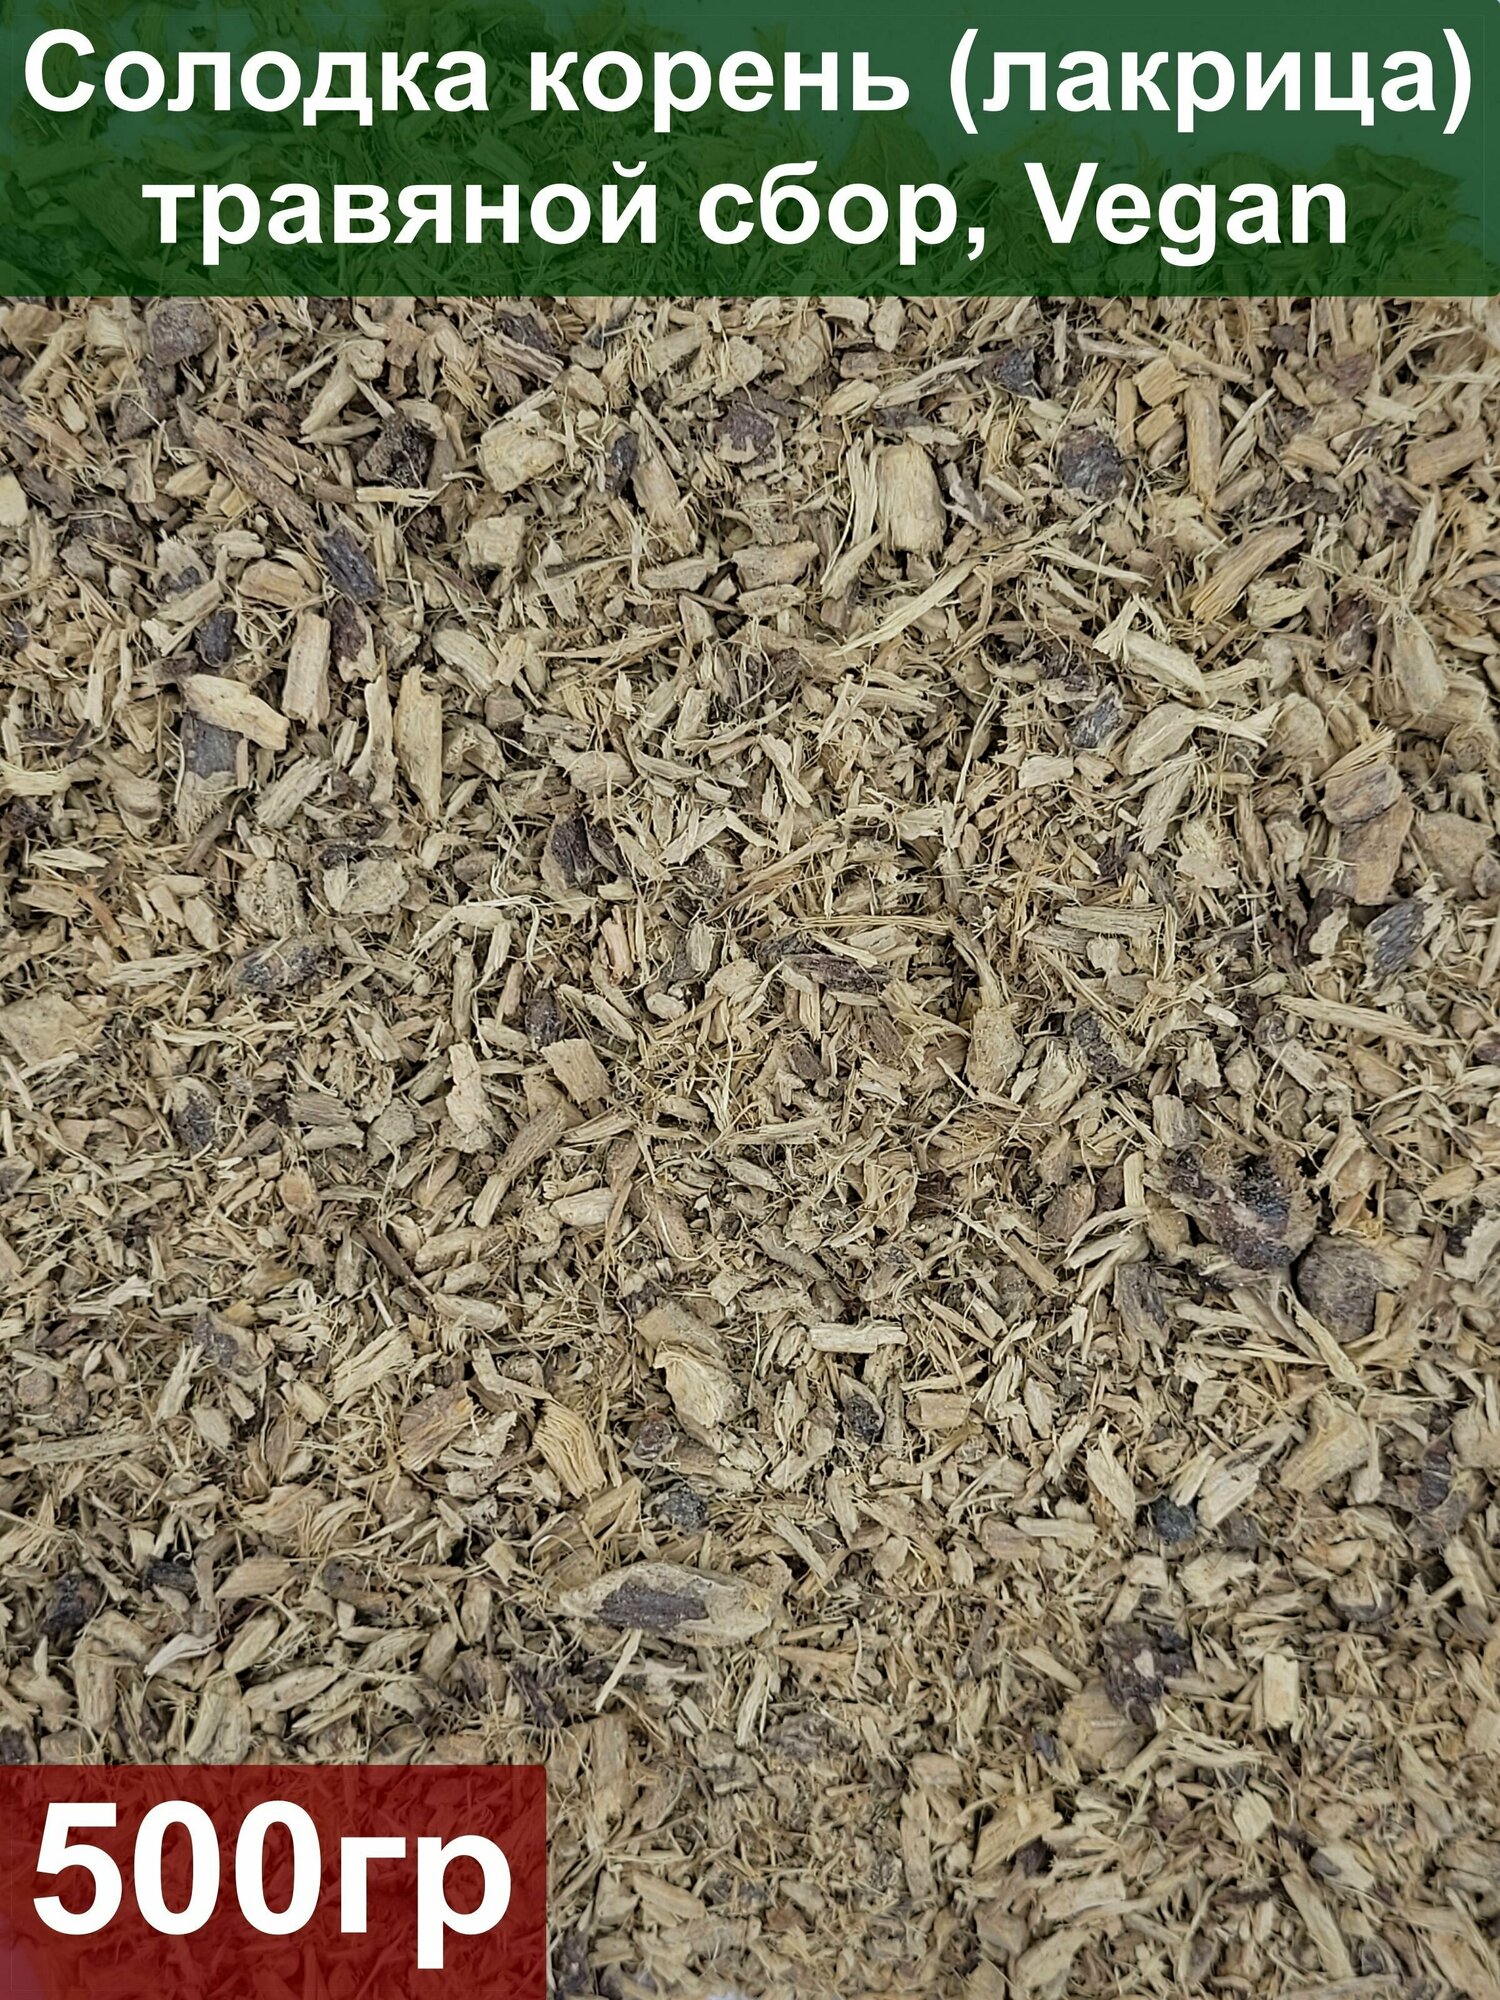 Солодка корень (лакрица) 500 гр травяной сбор Vegan